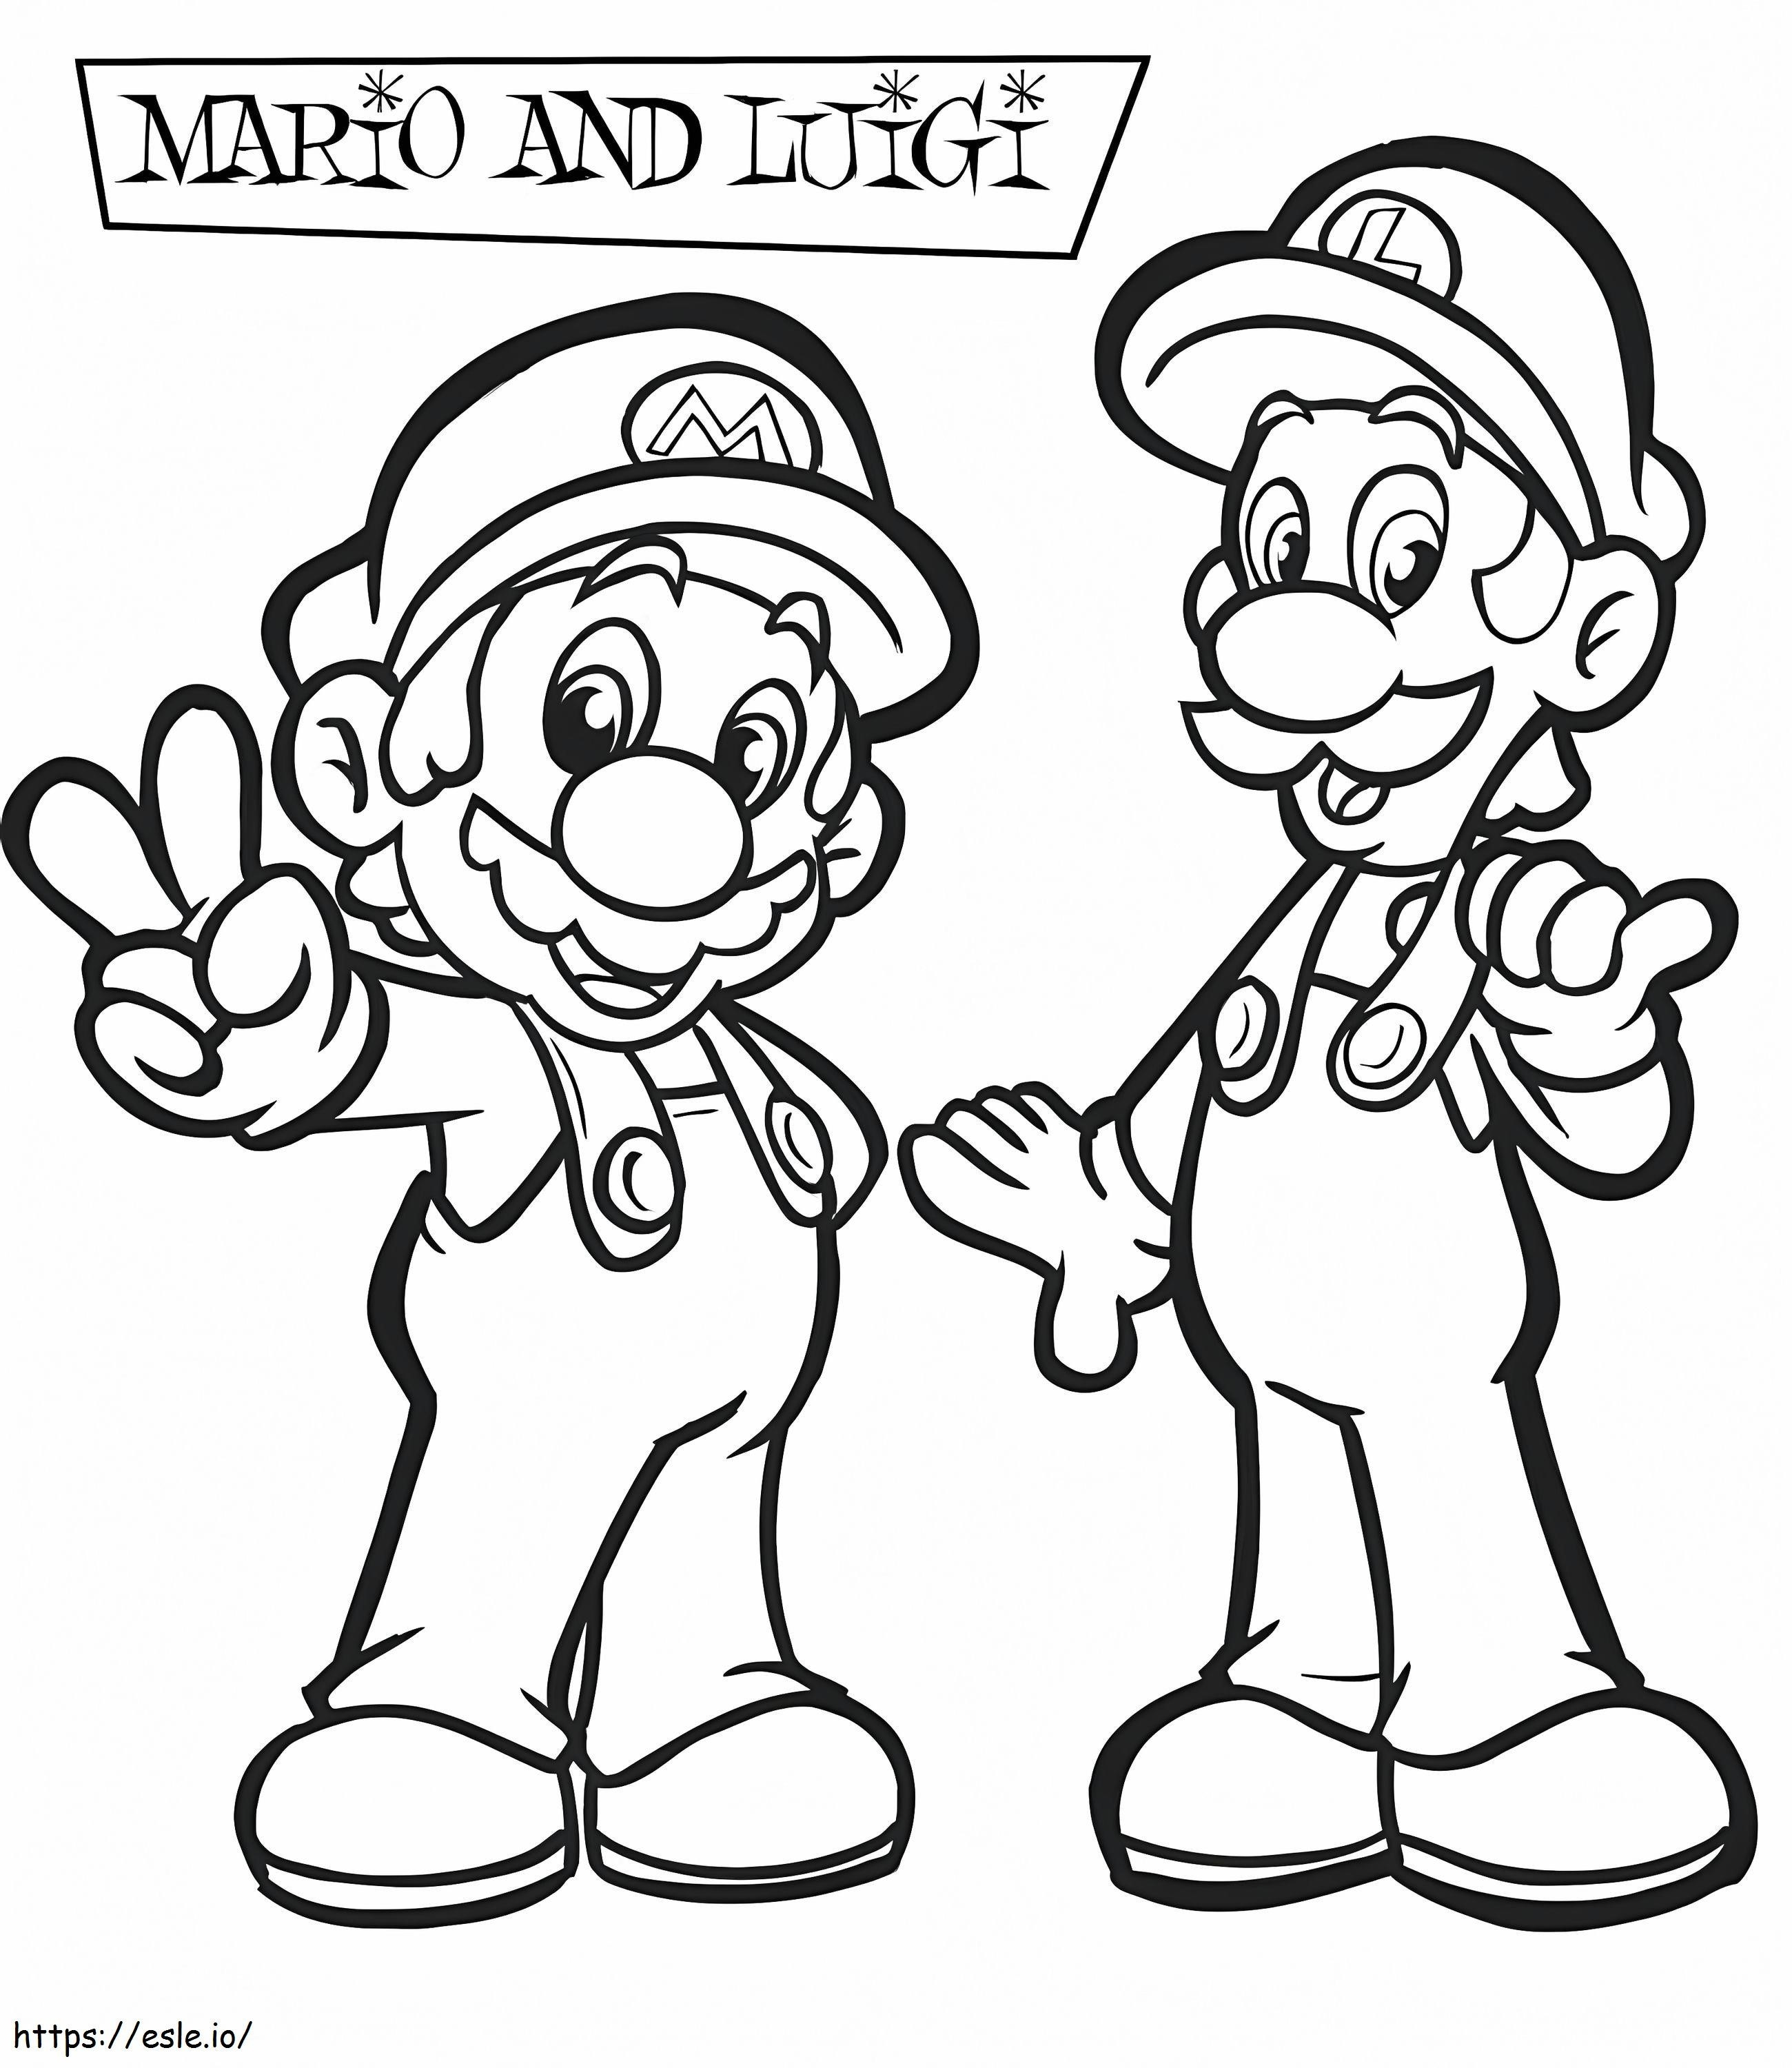 Grappige Luigi en Mario kleurplaat kleurplaat